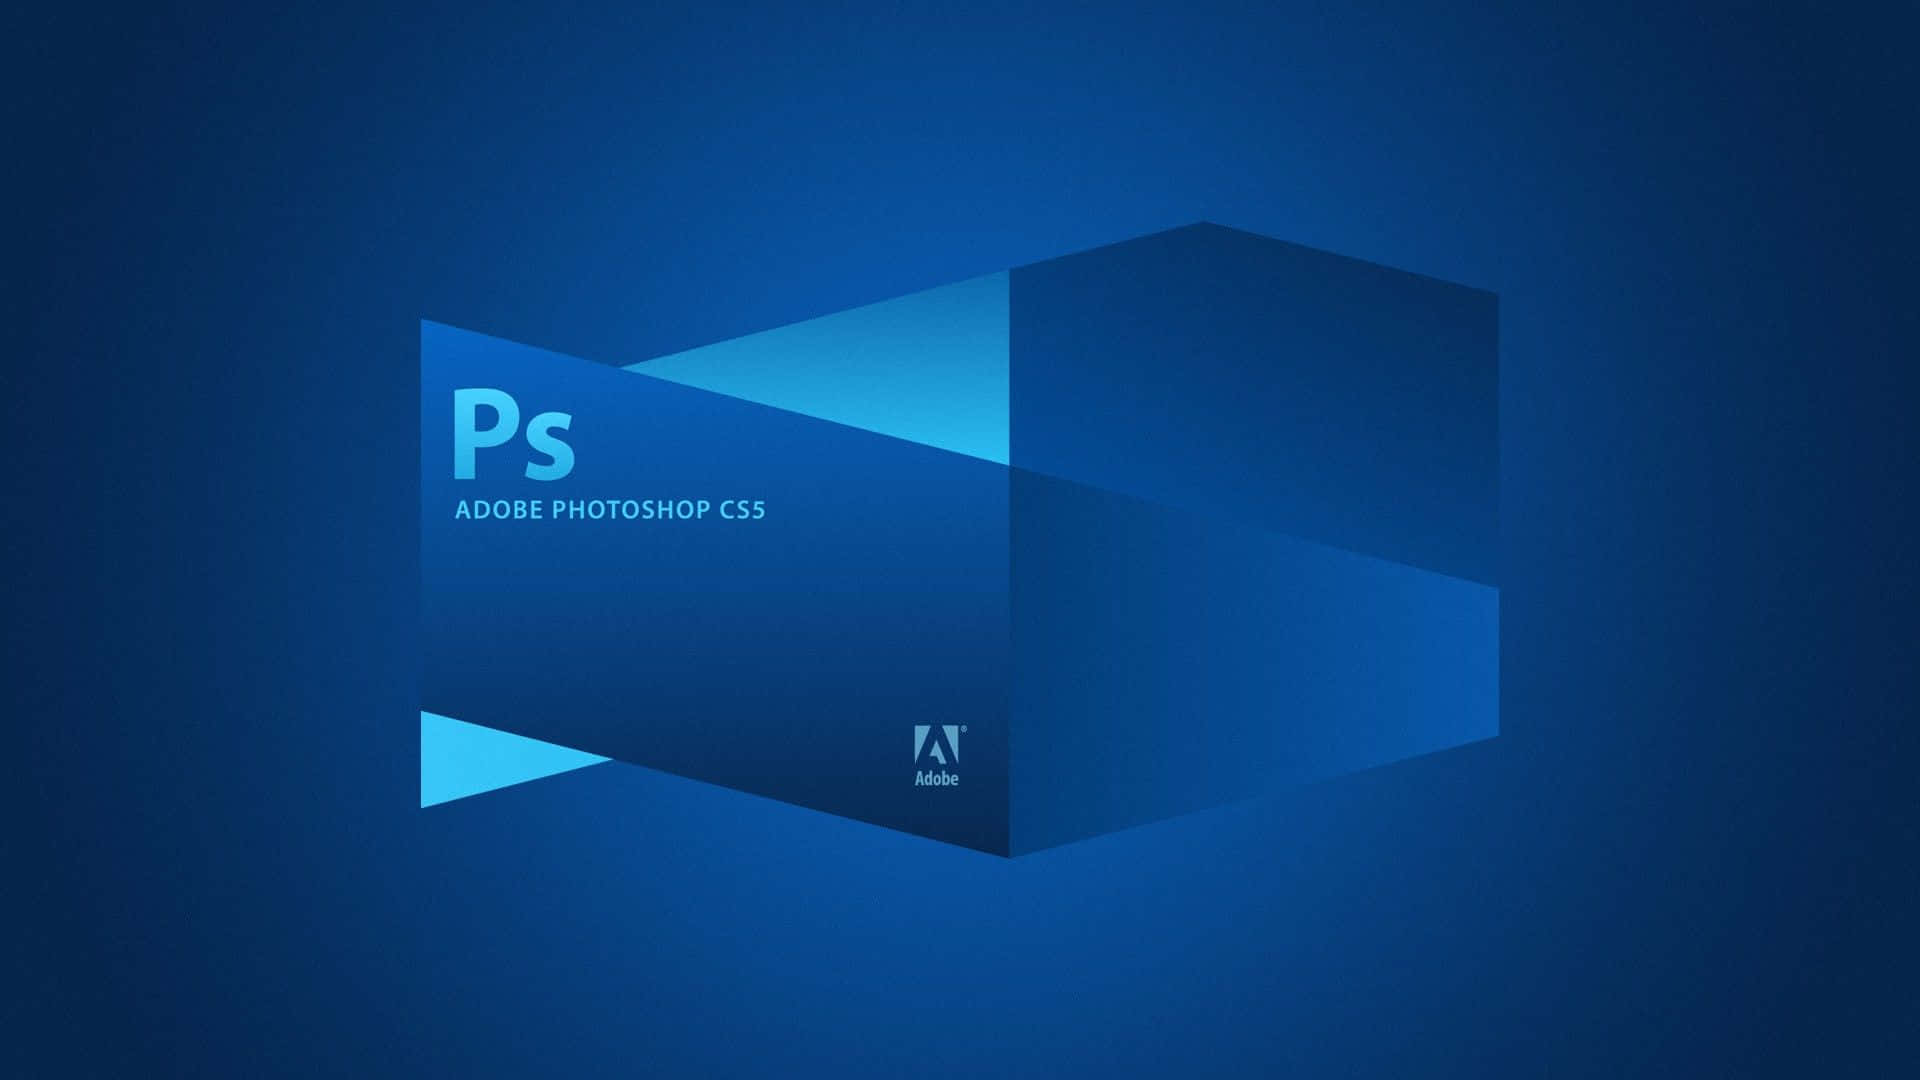 Blauercs5 Adobe Photoshop Hintergrund.